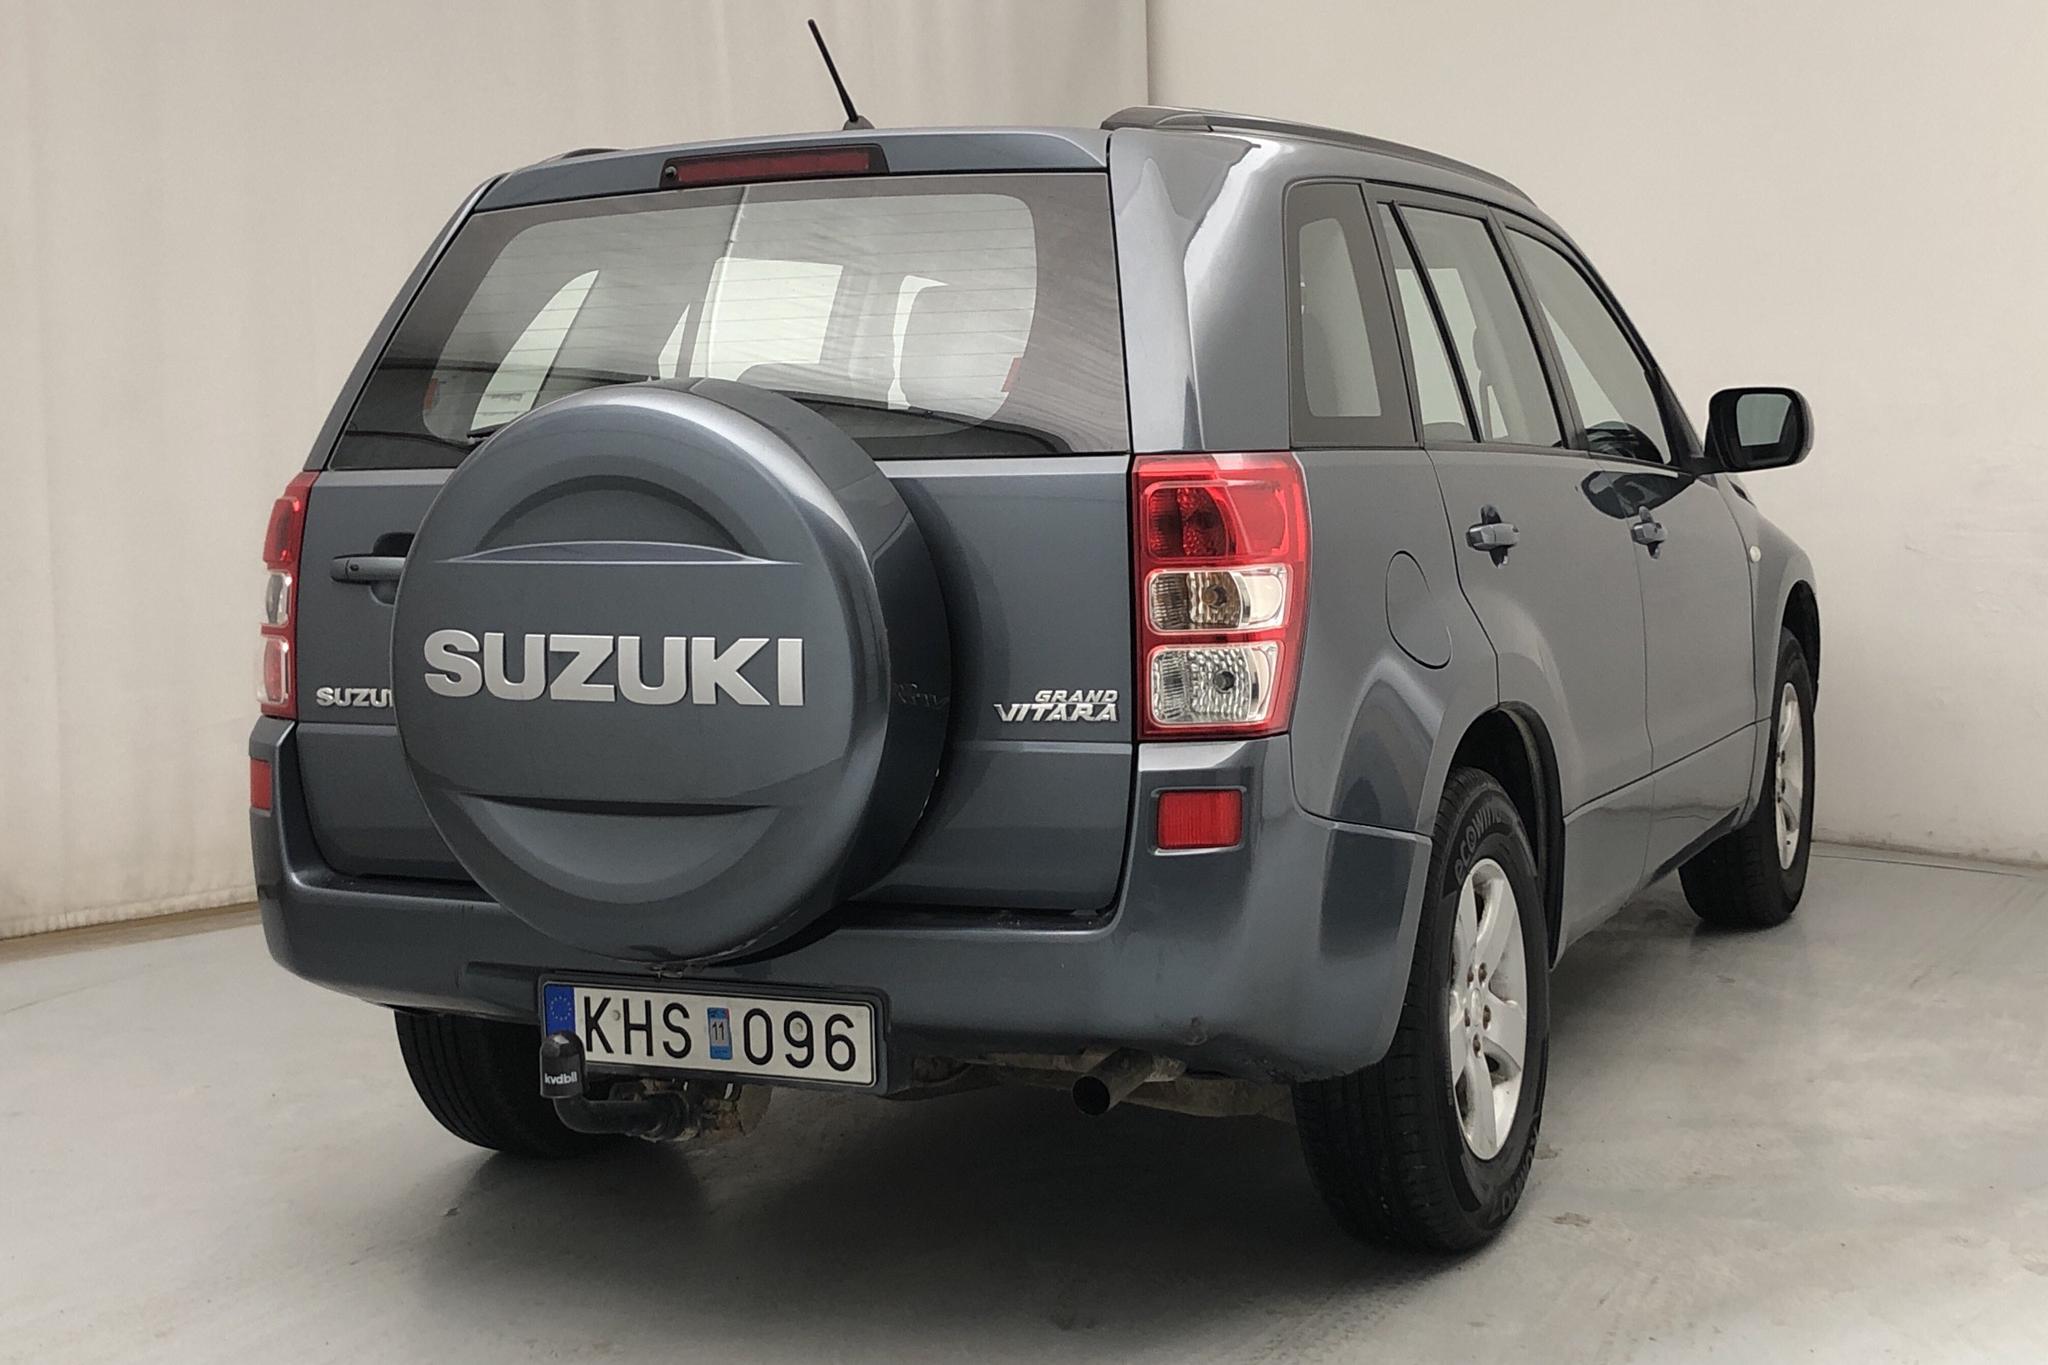 Suzuki Grand Vitara 2.0 5dr (140hk) - 78 170 km - Automatic - Dark Grey - 2007